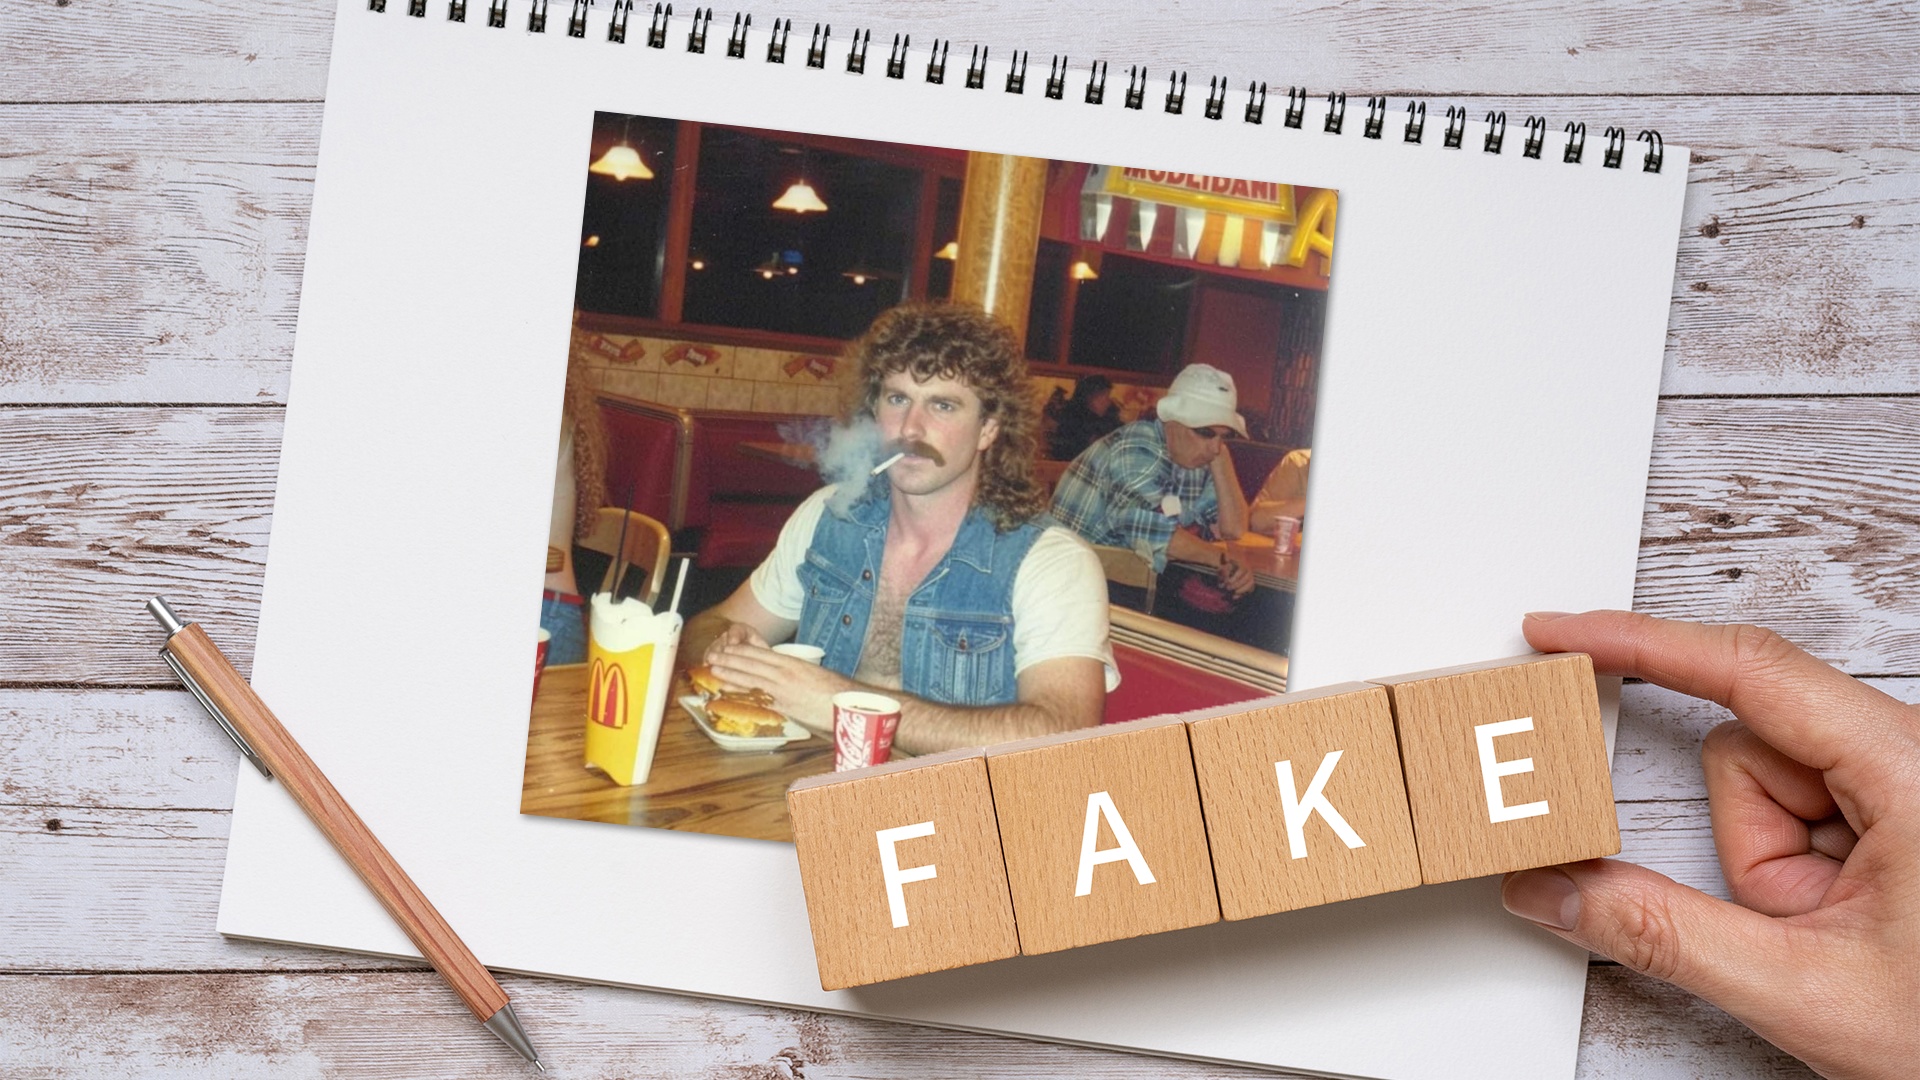 Der im Restaurant rauchende Mann aus den 80ern geht viral, doch er ist nicht echt - So erkennt ihr falsche Bilder